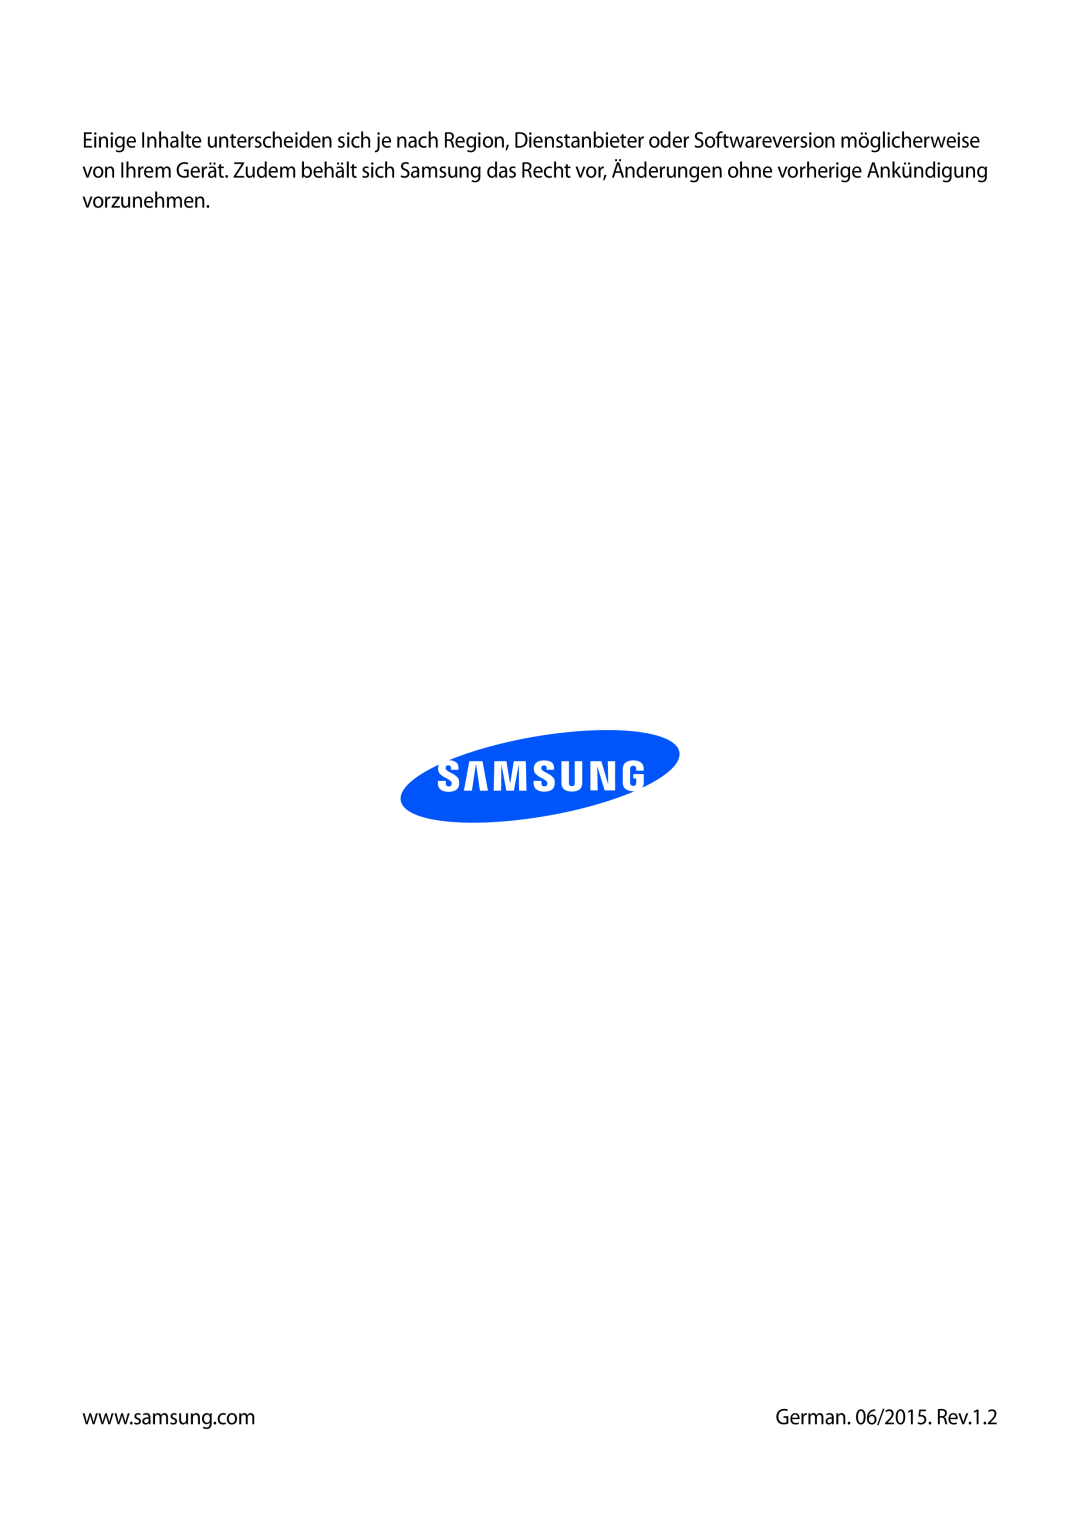 Samsung SM-P6000ZWEATO, SM-P6000ZWAXEO, SM-P6000ZKEDBT, SM-P6000ZKAEUR, SM-P6000ZKAATO manual German. 06/2015. Rev.1.2 